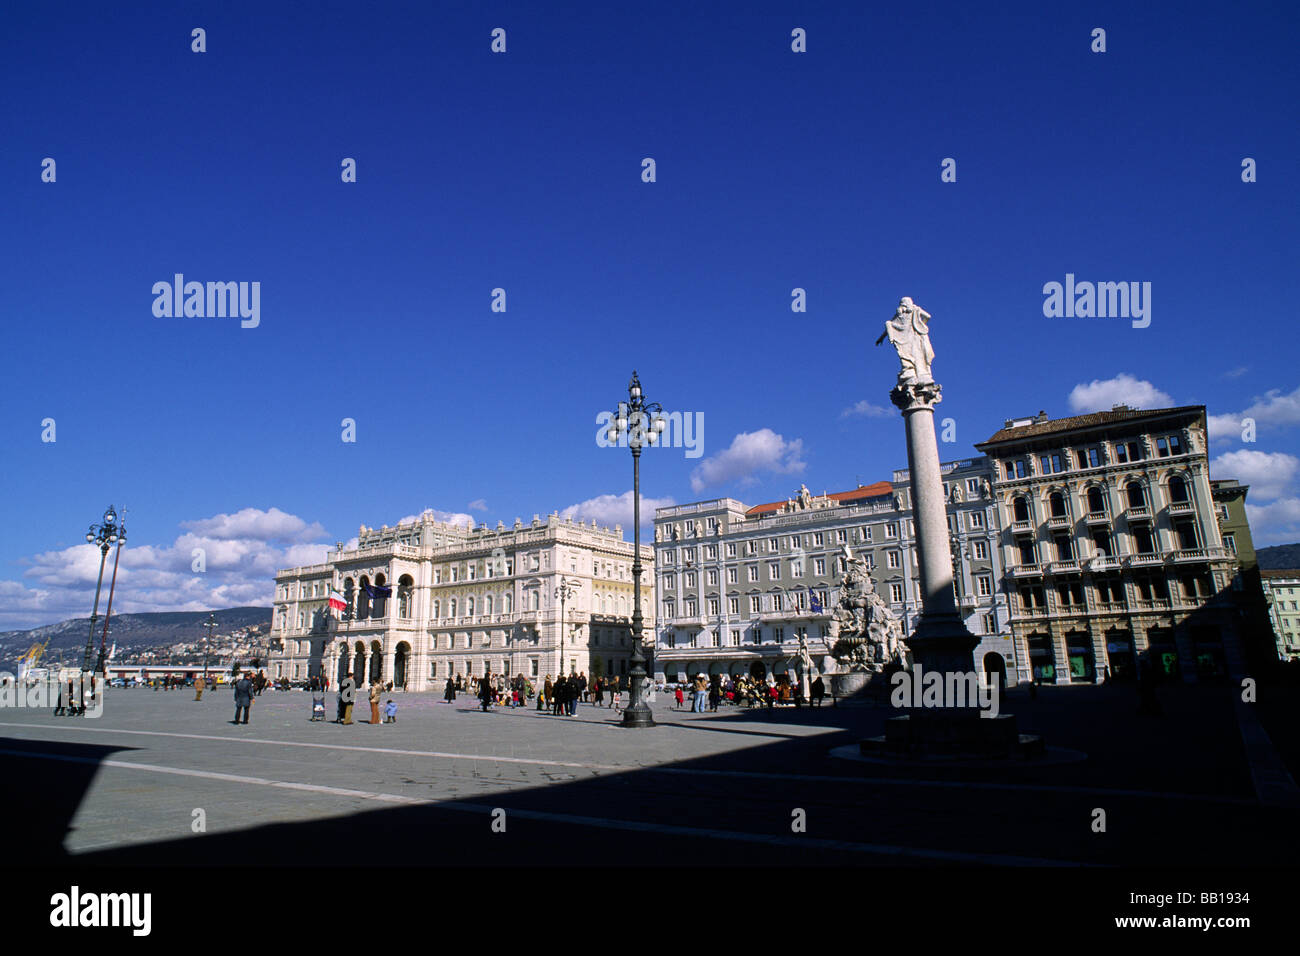 Italy, Friuli Venezia Giulia, Trieste, Piazza dell'Unità d'Italia Stock Photo